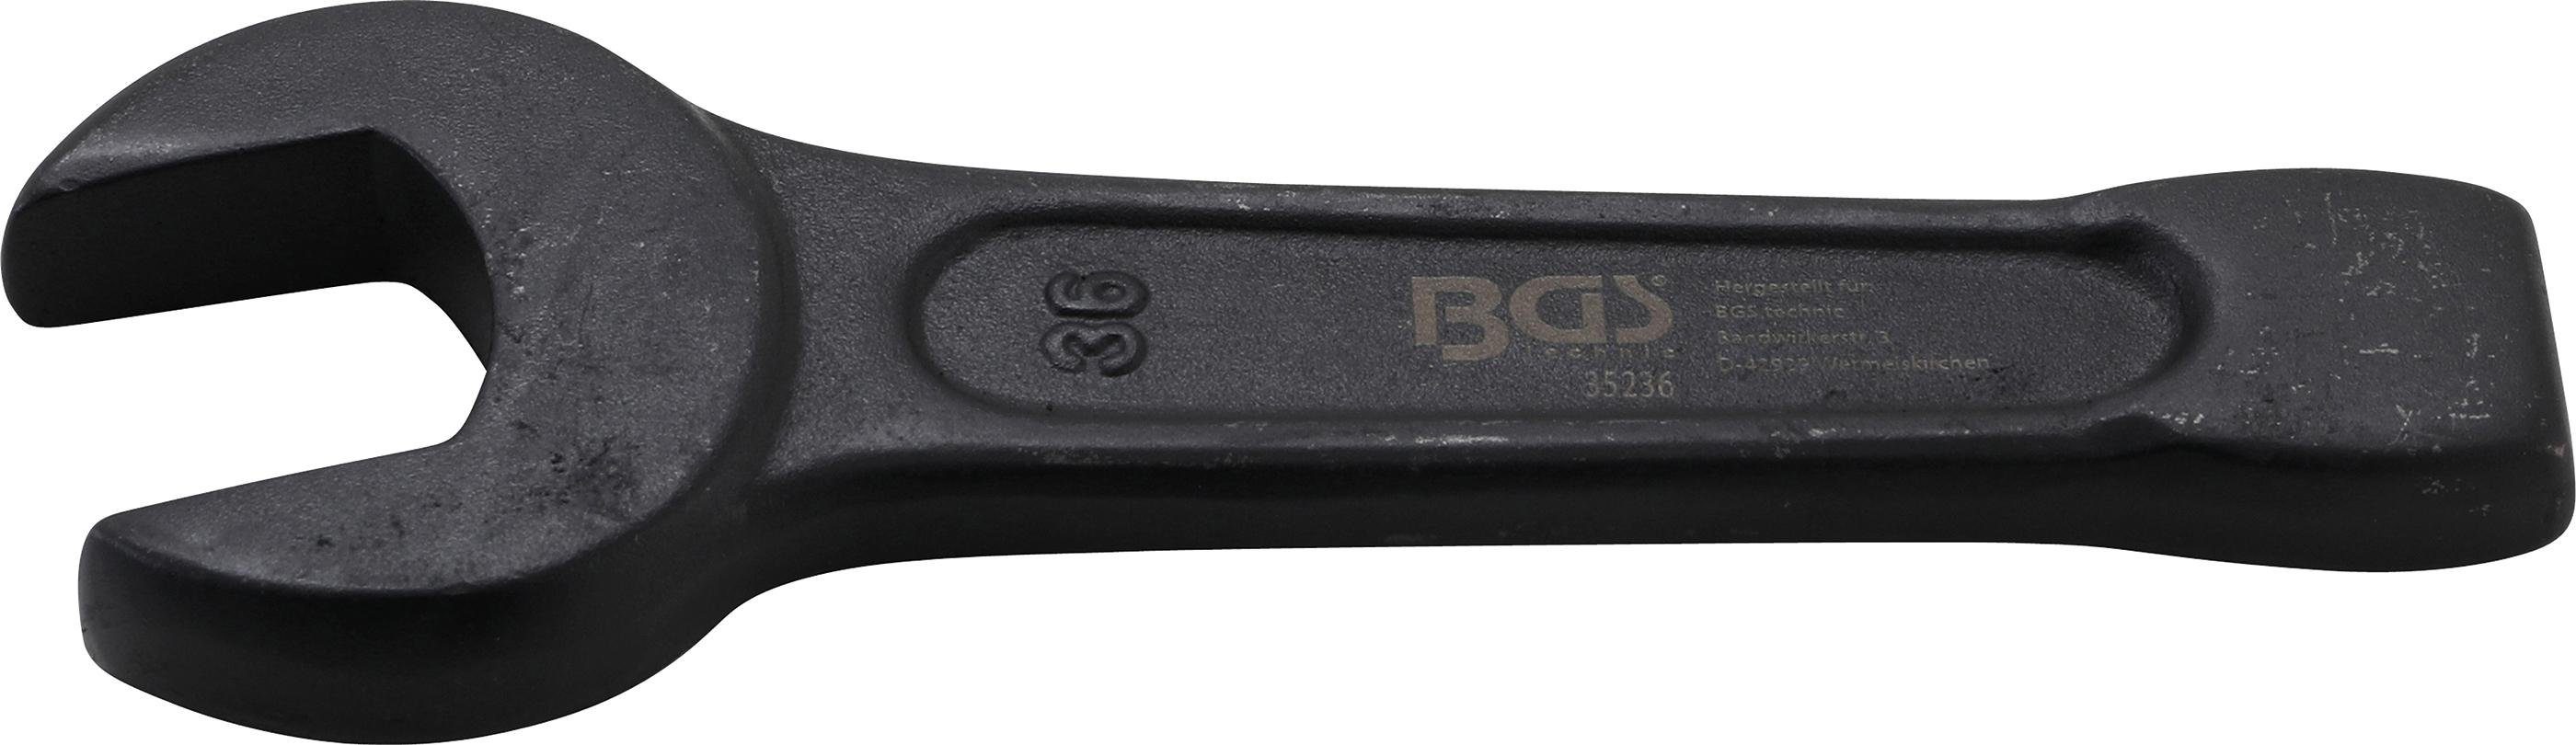 BGS technic Maulschlüssel Schlag-Maulschlüssel, 36 mm SW